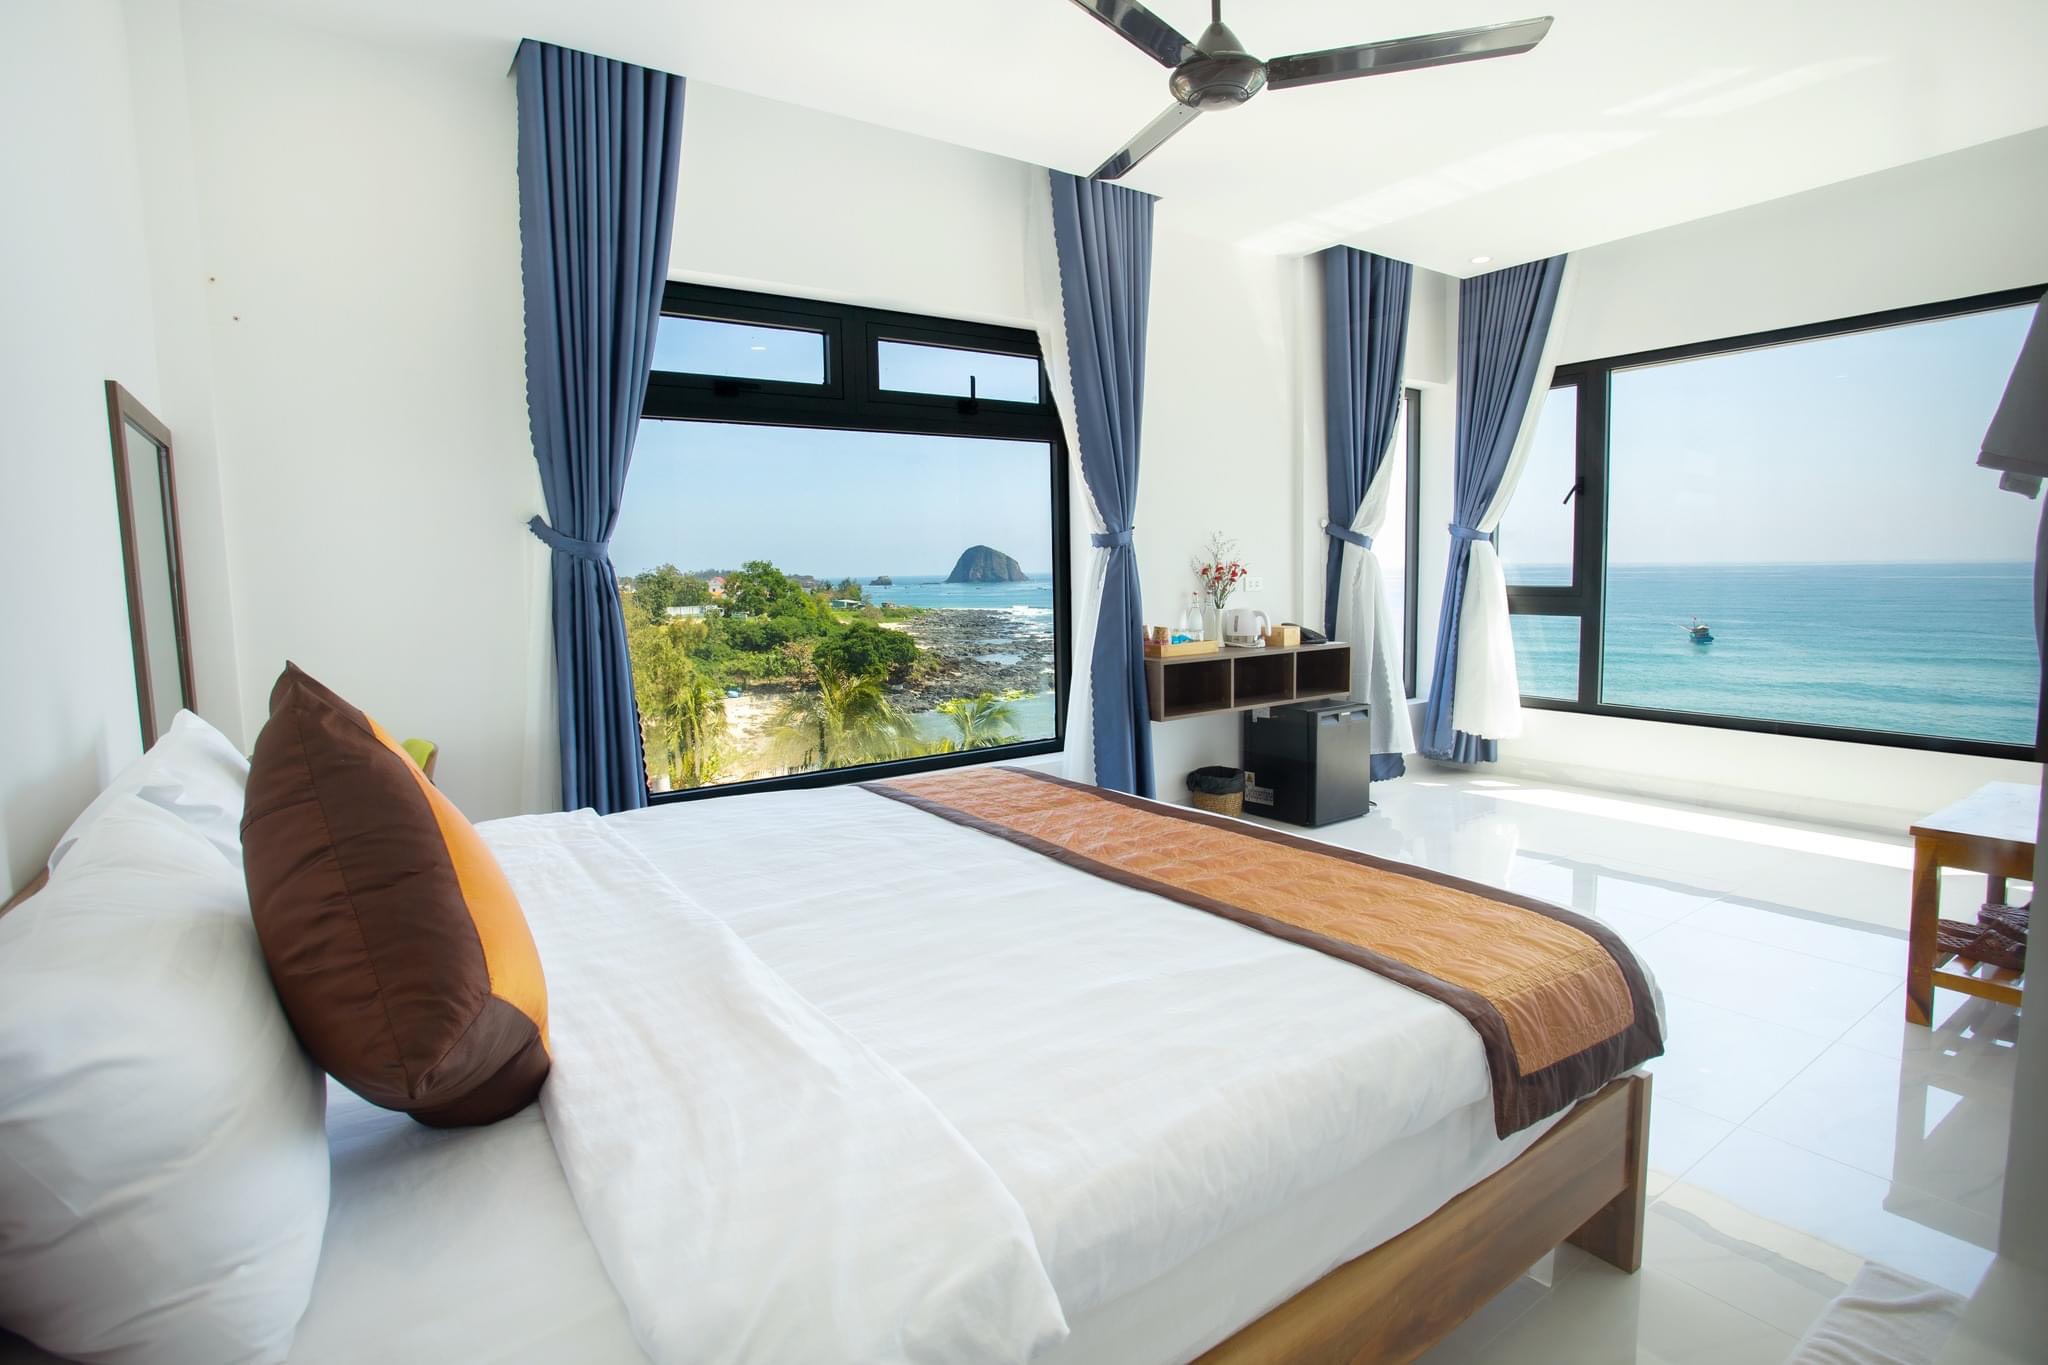 Khách Sạn View trực diện Biển, Tuy An,Cách TP 12km, 45 Phòng thu nhập 10ty/năm - Ảnh 4